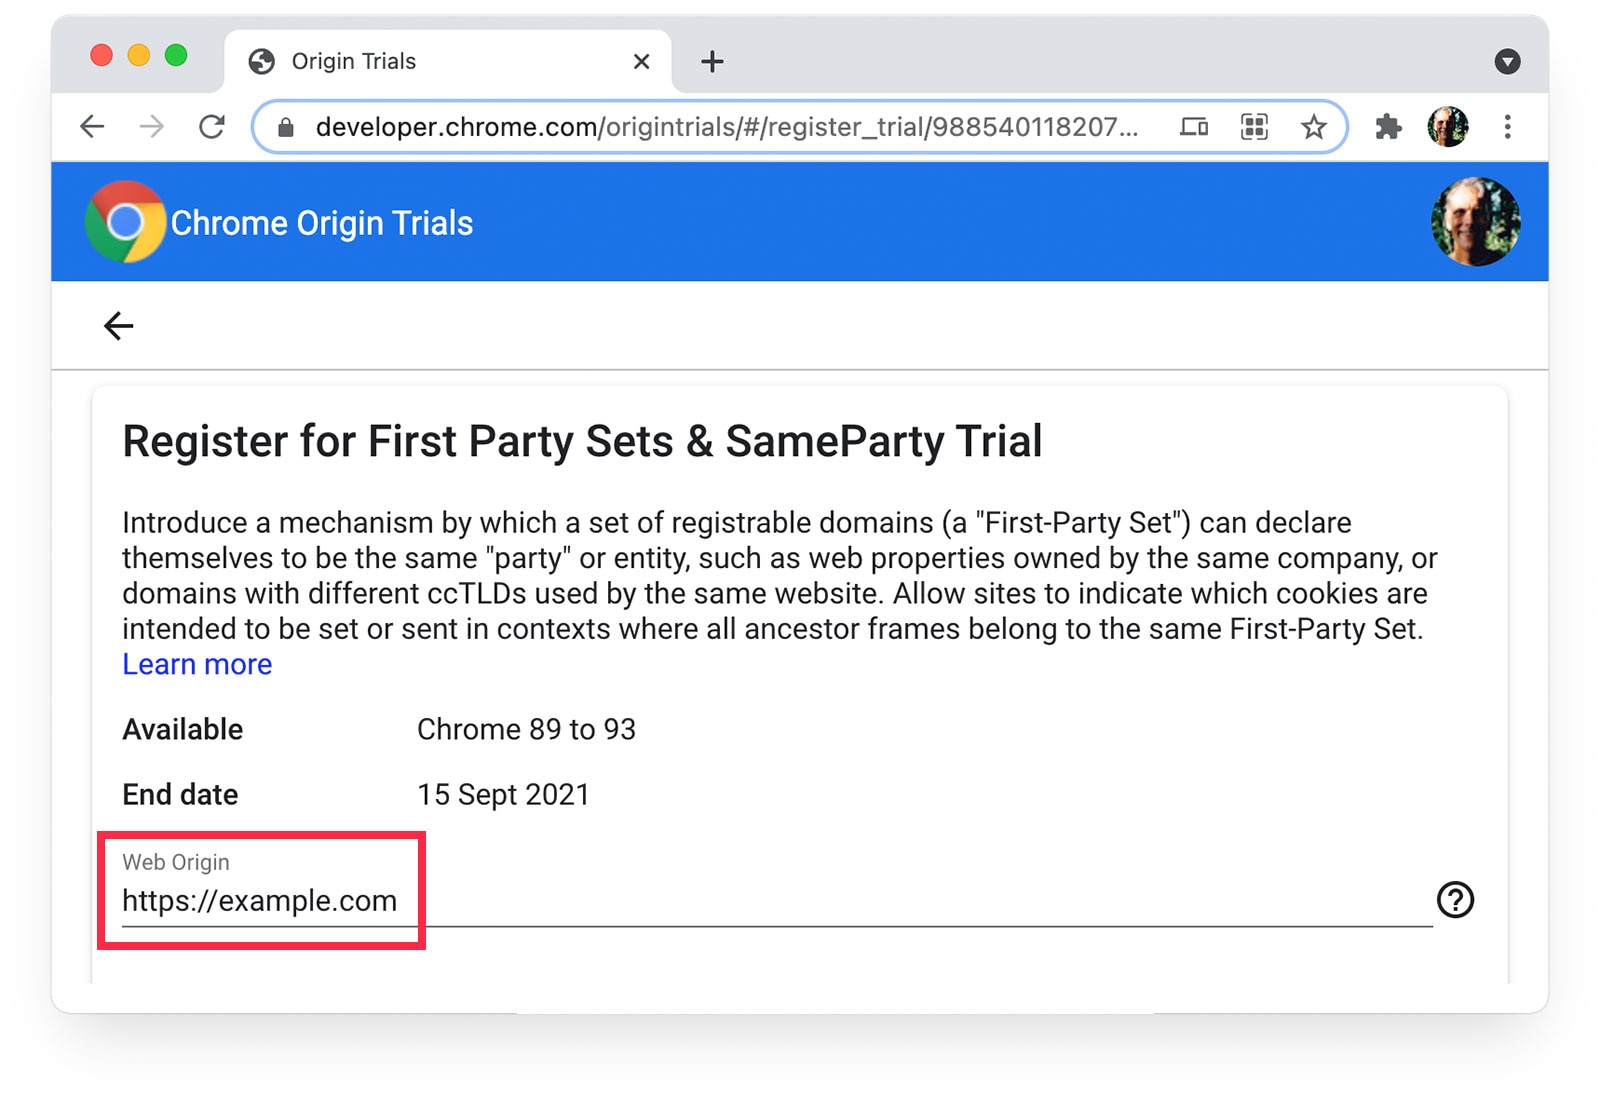 Chrome ऑरिजिन ट्रायल 
पेज पर दिख रहा है कि https://example.com को वेब ऑरिजिन के तौर पर चुना गया है.